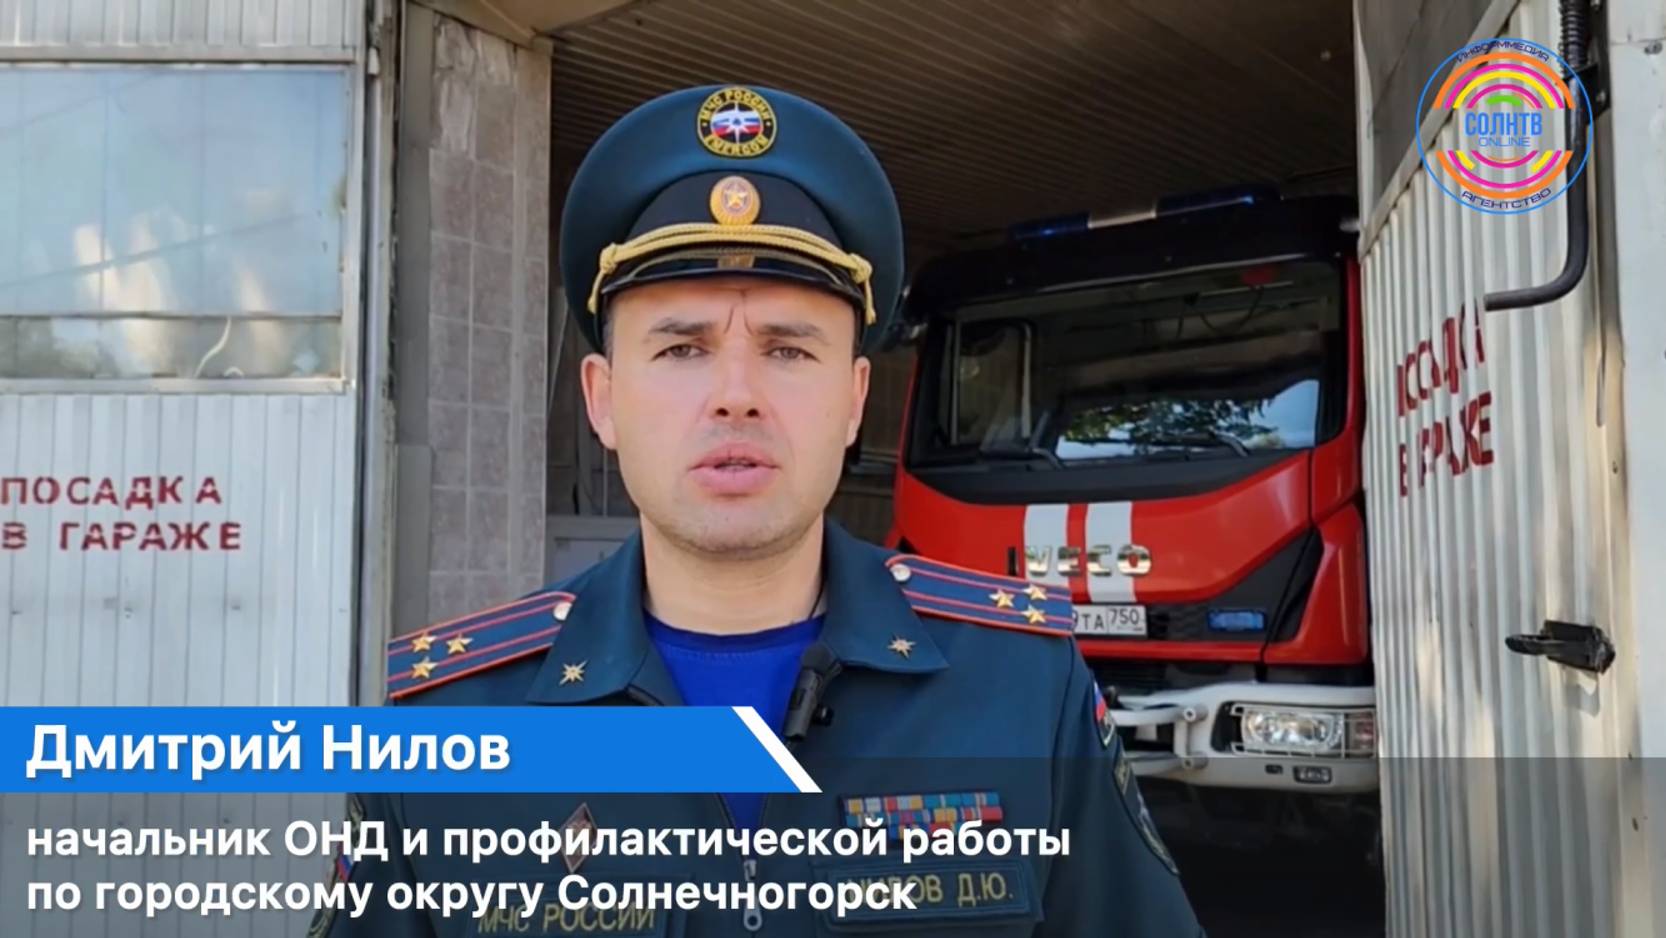 Пожароопасная обстановка на территории городского округа Солнечногорск